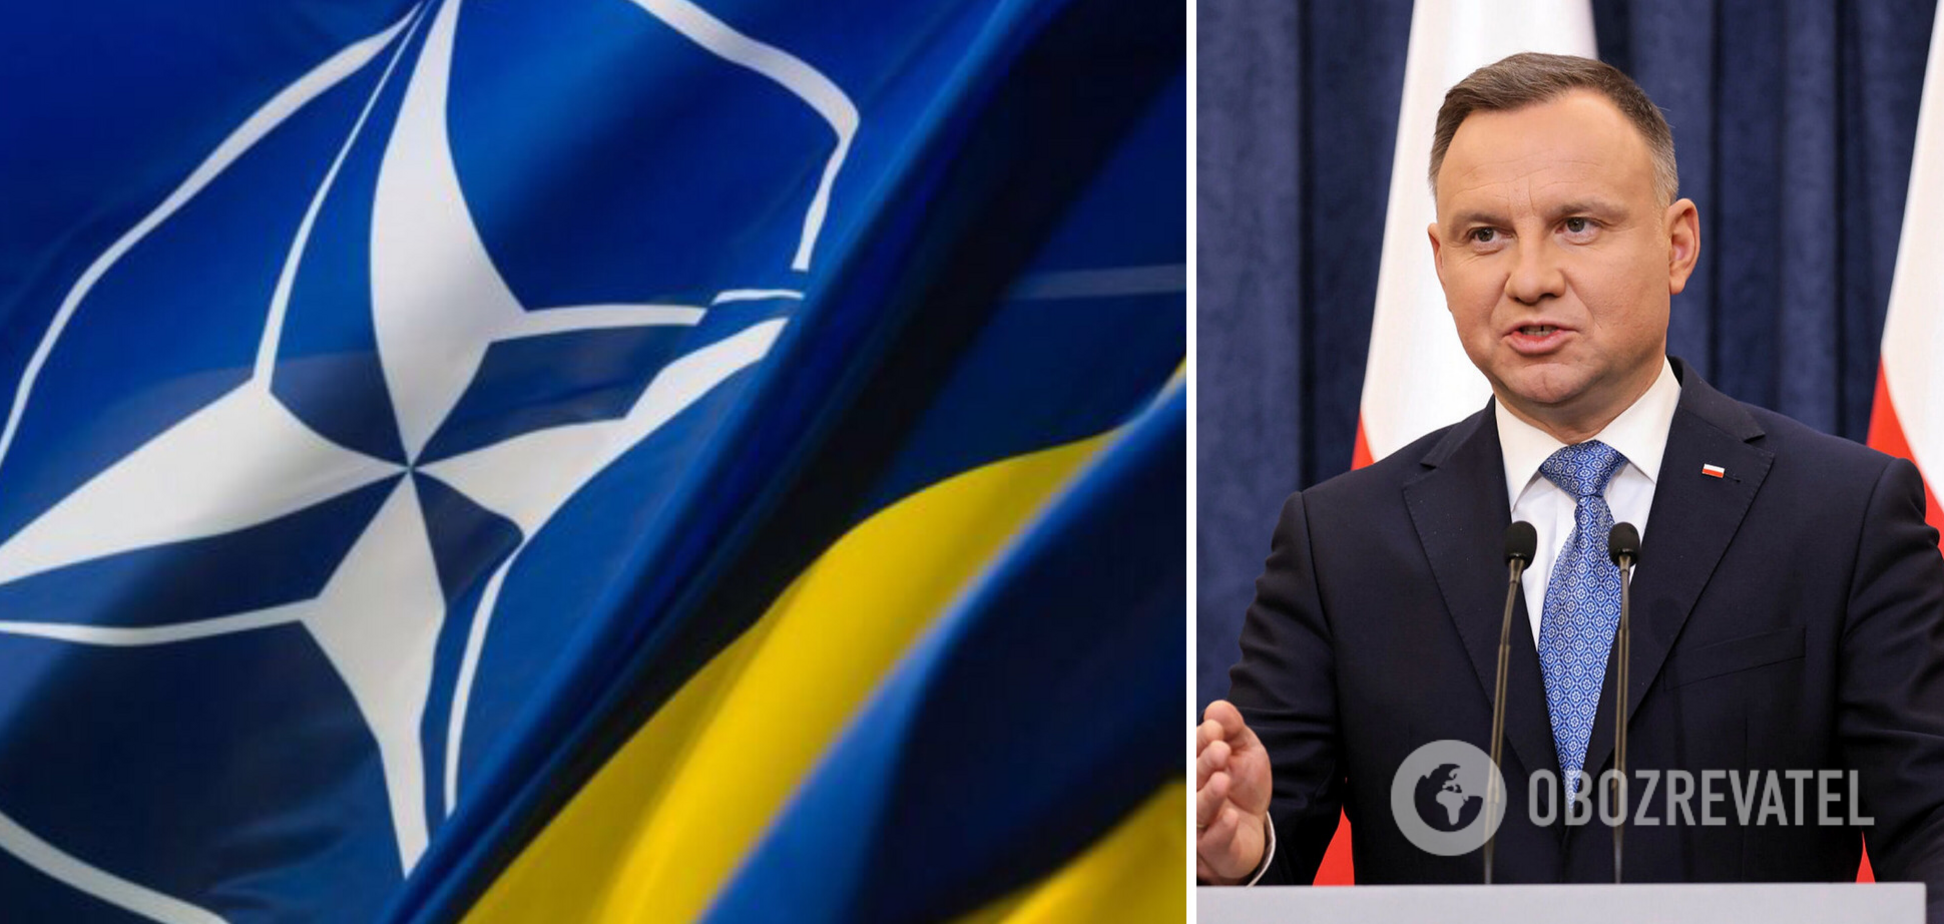 Дуда заявив, що Росія має зламати зуби об Україну: у нас карт-бланш, жодних зобов'язань перед РФ немає